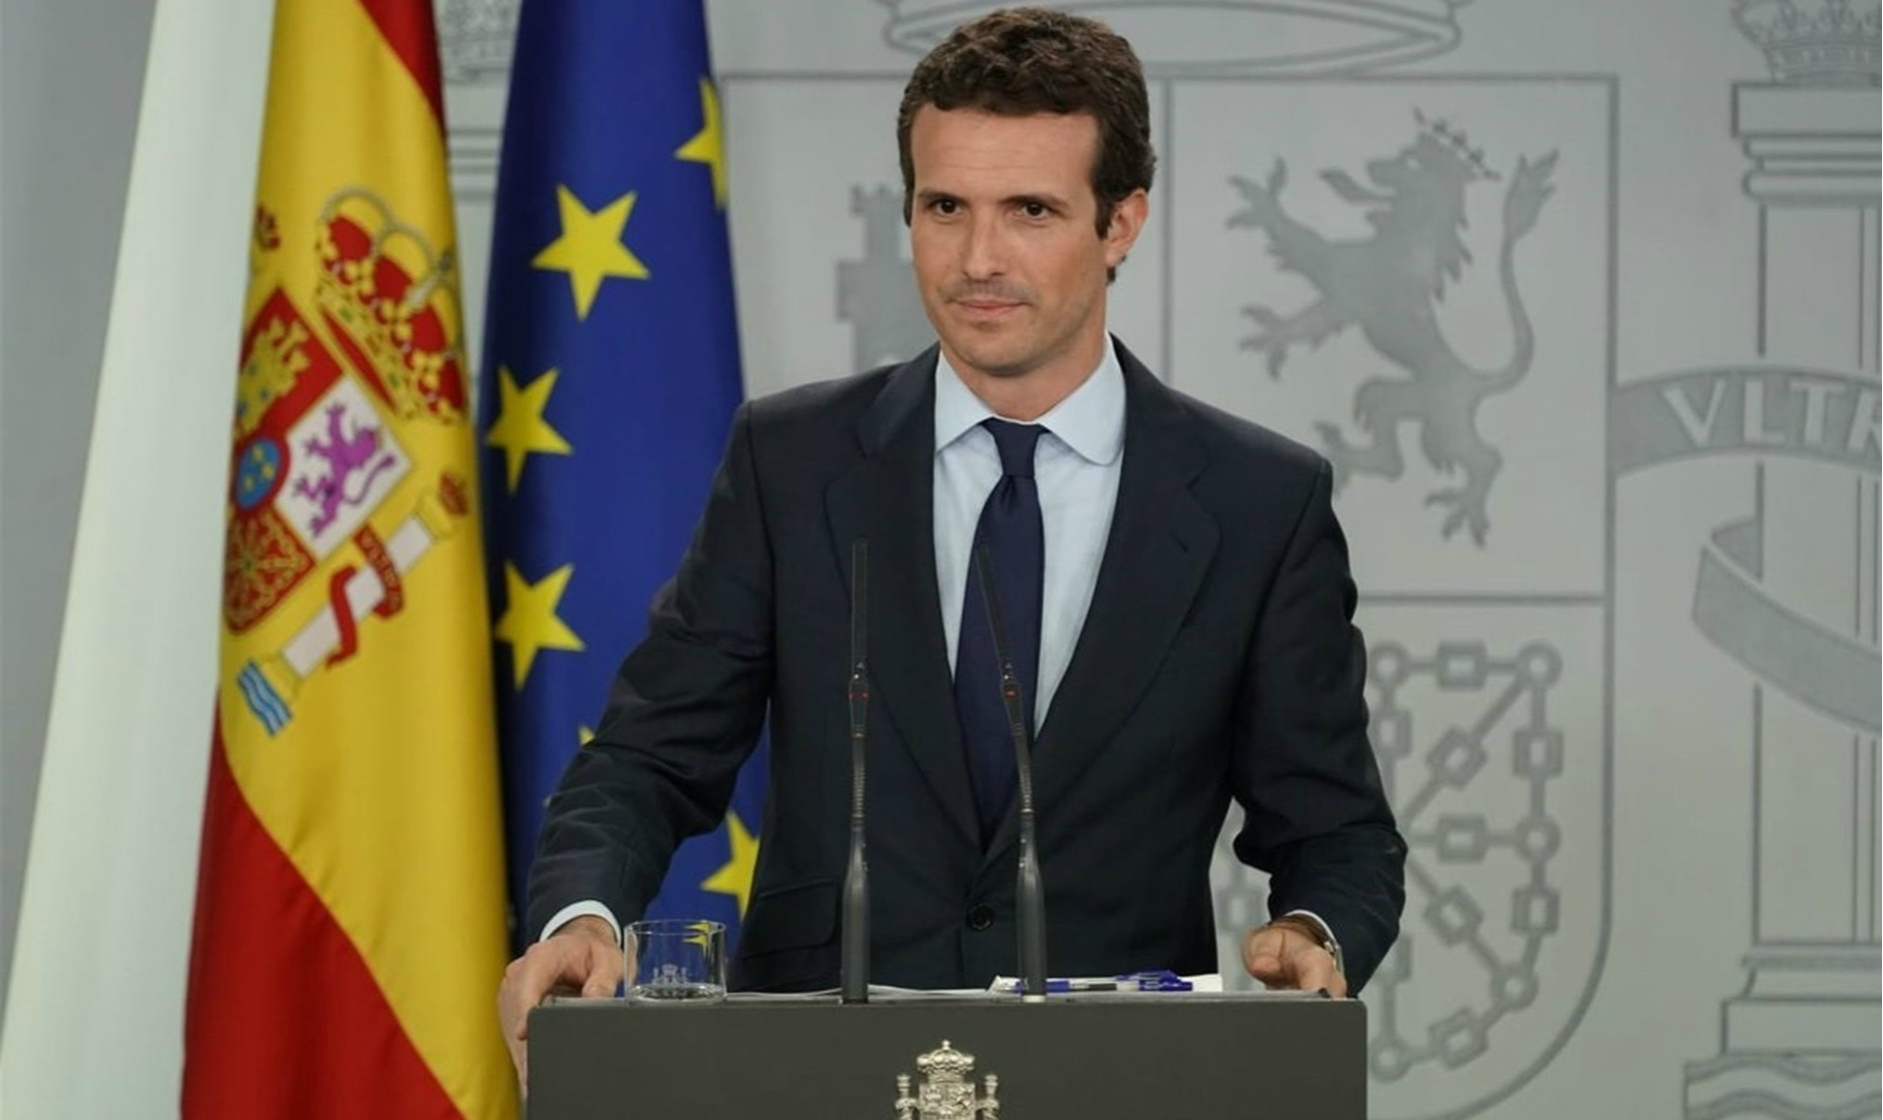 Discursos cheios de impropérios, defesa da família,  da lealdade à Coroa e rechaço ao aborto são algumas das apostas do político que disputa o poder espanhol